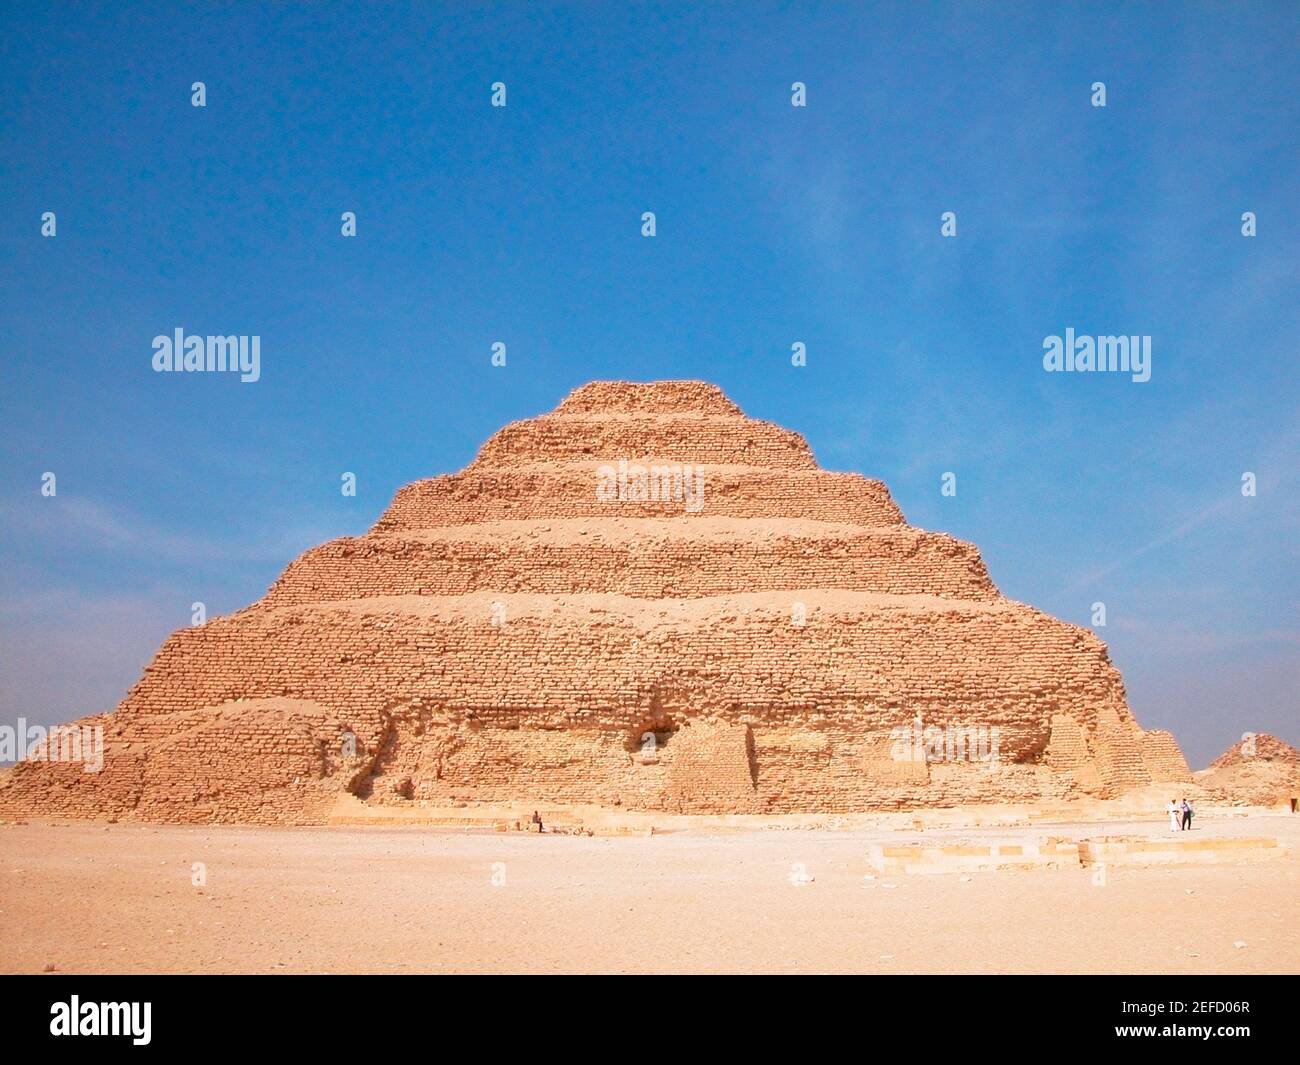 Piramide in un paesaggio arido, la piramide a gradoni di Zoser, Saqqara, Egitto Foto Stock